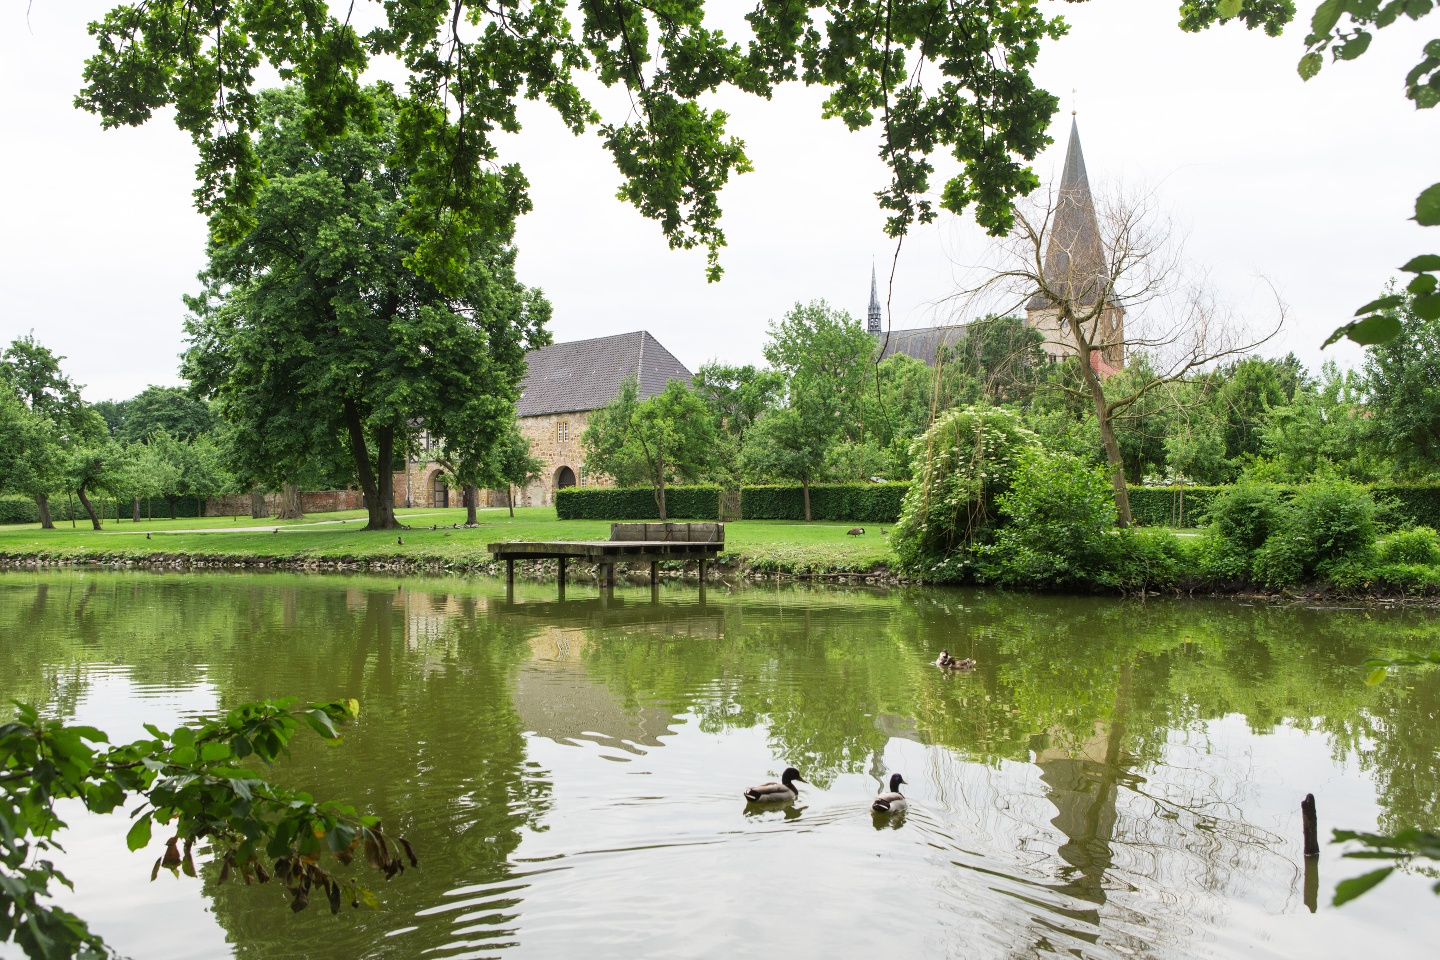 Teich im Garten der Klosteranlage Herzebrock